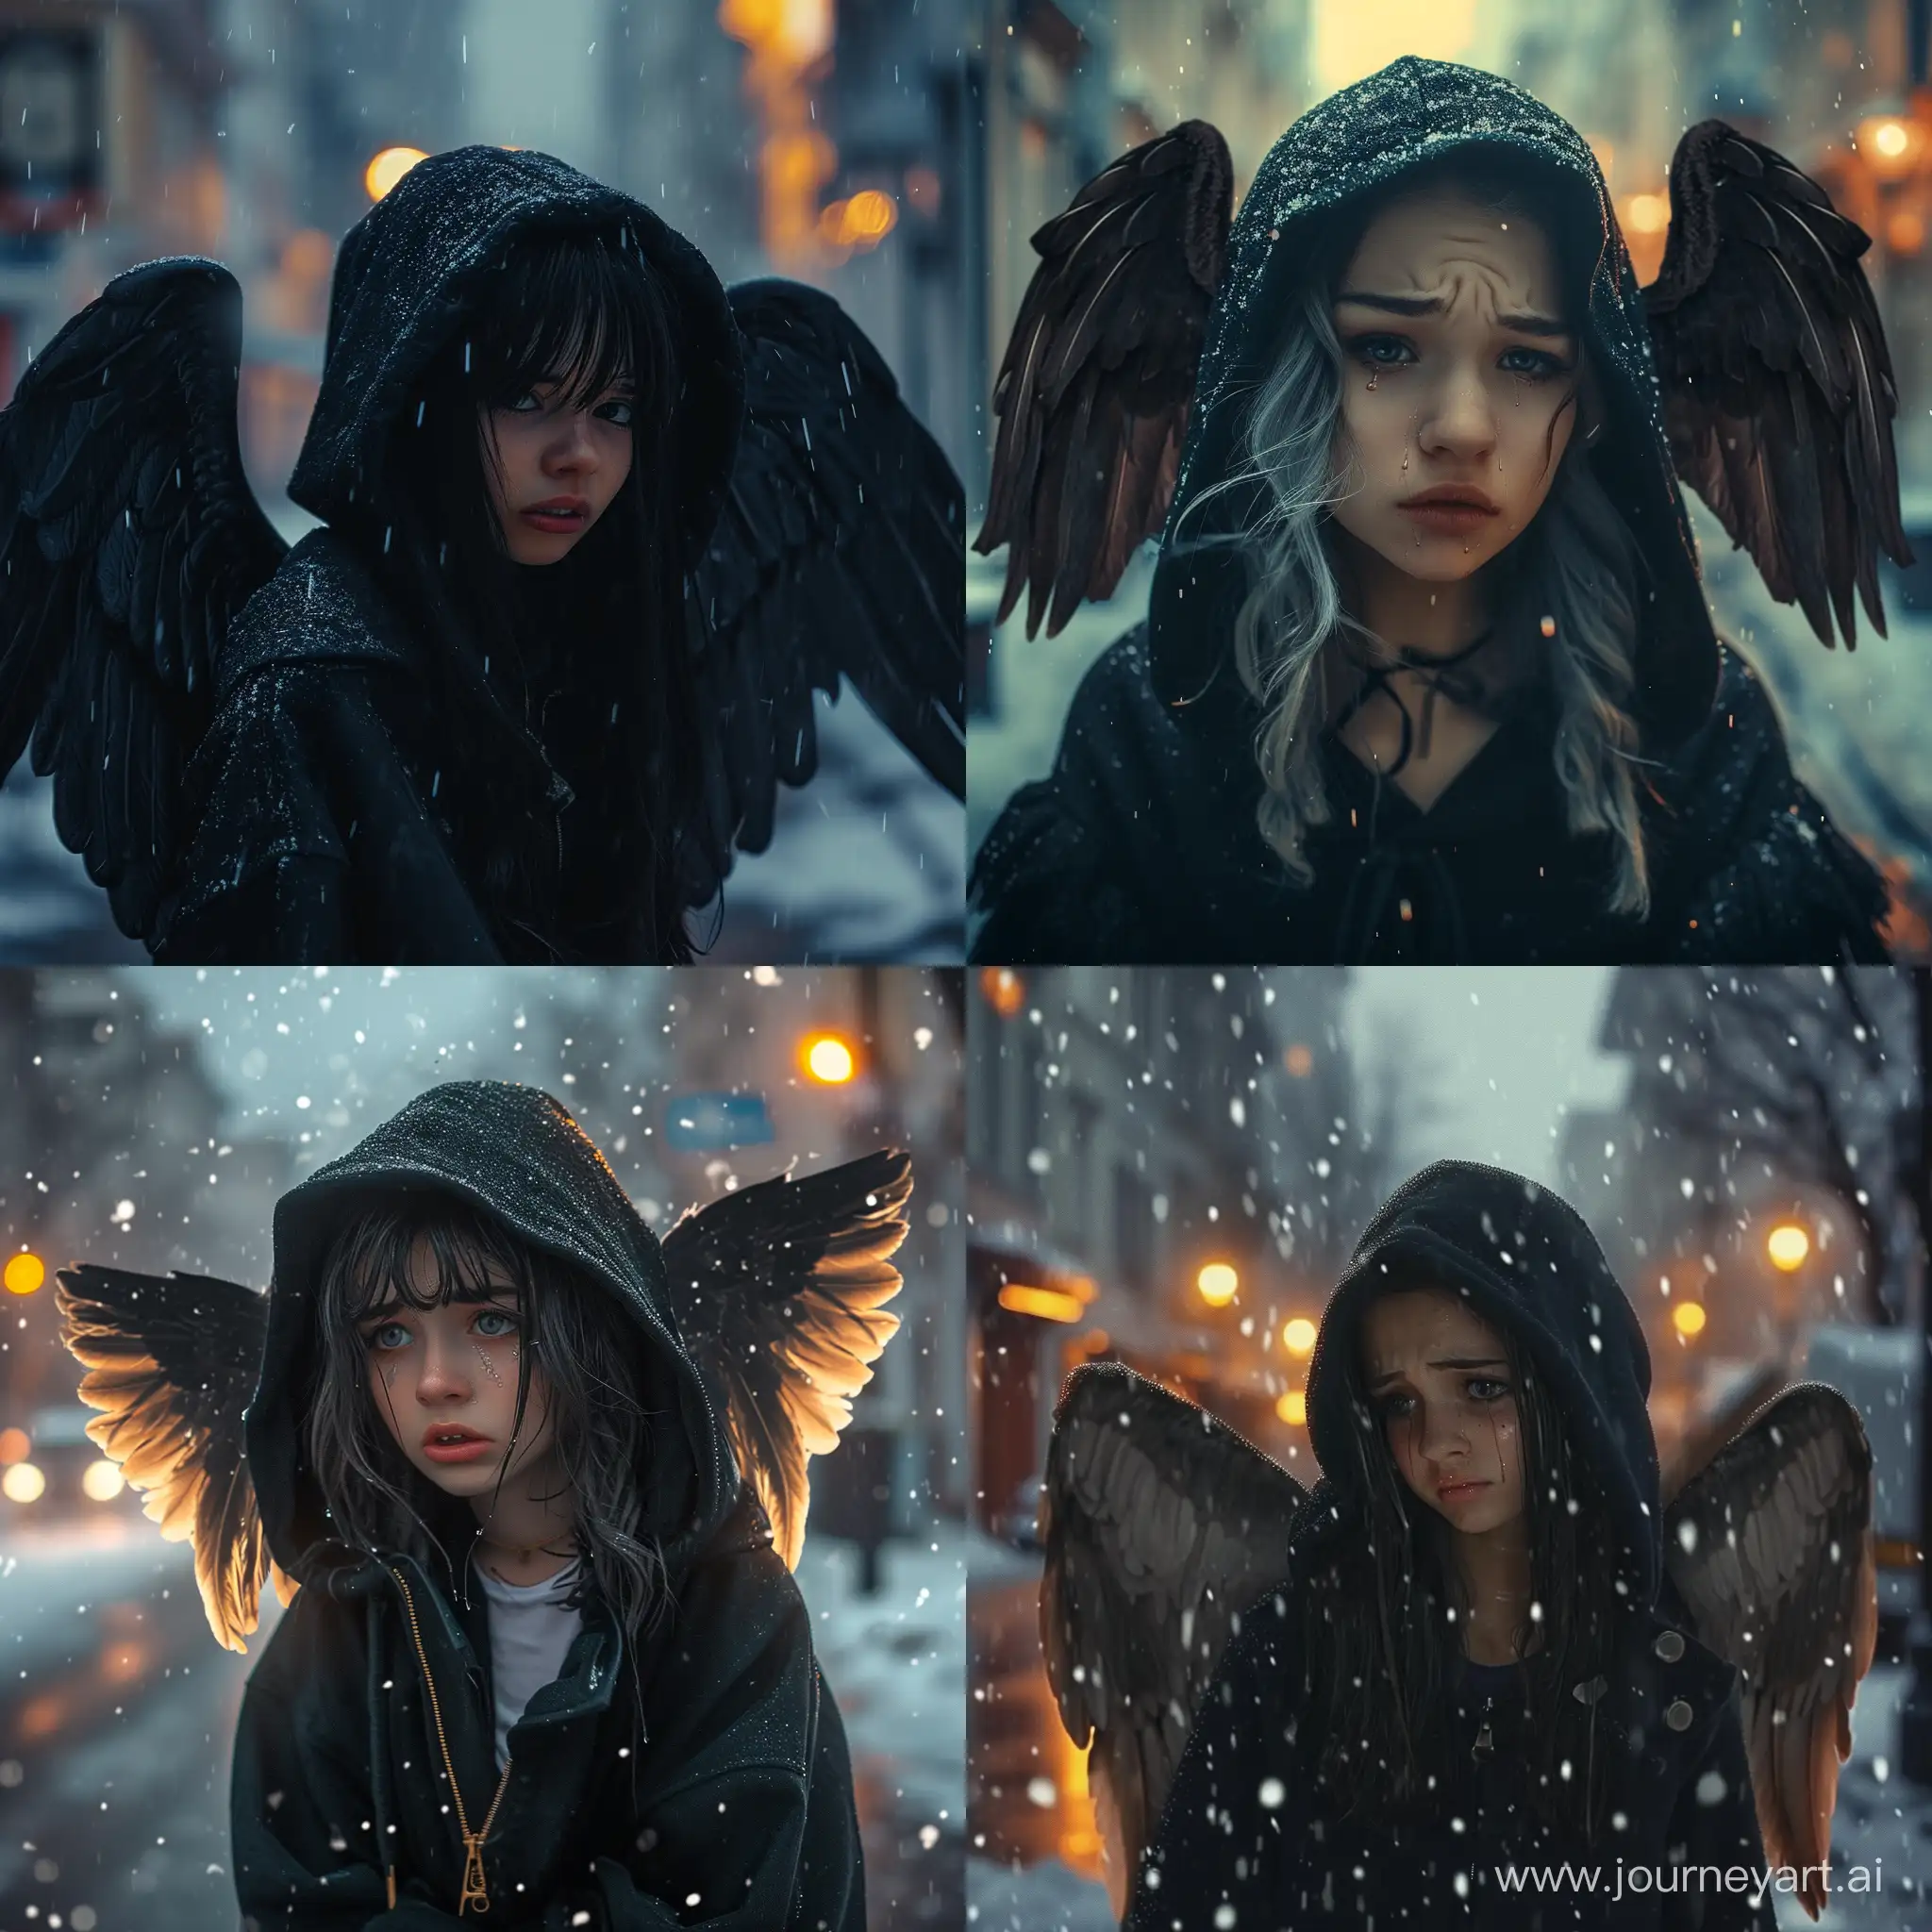 عکس دختر خوشگل 18 ساله با مدل موی پسرانه و هودی مشکی کلاه داره  دوتا بال دارد مانند فرشته ها ایستاده وسط خیابان در غروب زمستان در حال بارش باران بغض کرده